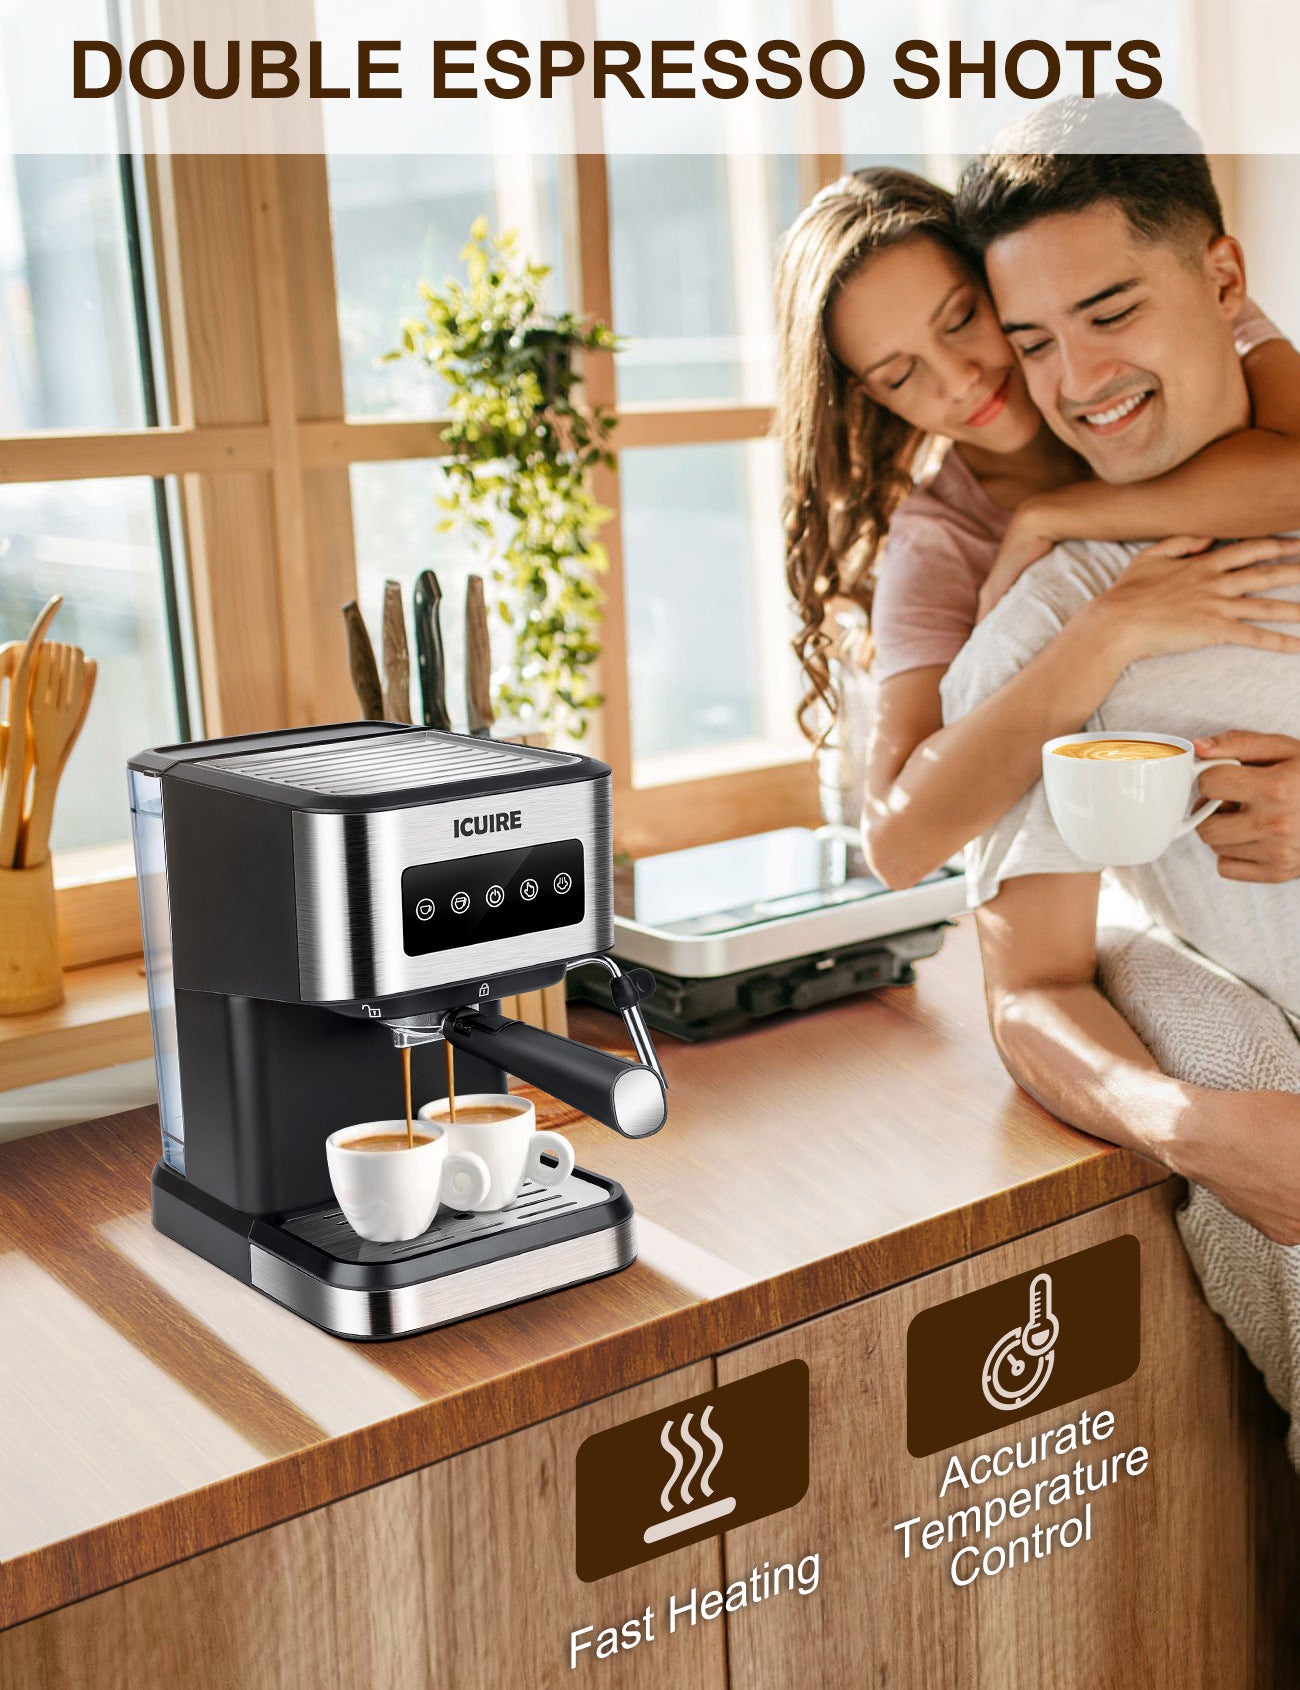 Espresso Machine with Milk Frother, 20 Bar Pump Pressure Coffee Machine, 1.5L/50oz Removable Water Tank, 1050W Semi-Automatic Espresso/Latte/Cappuccino Machines for Home Barista, Office